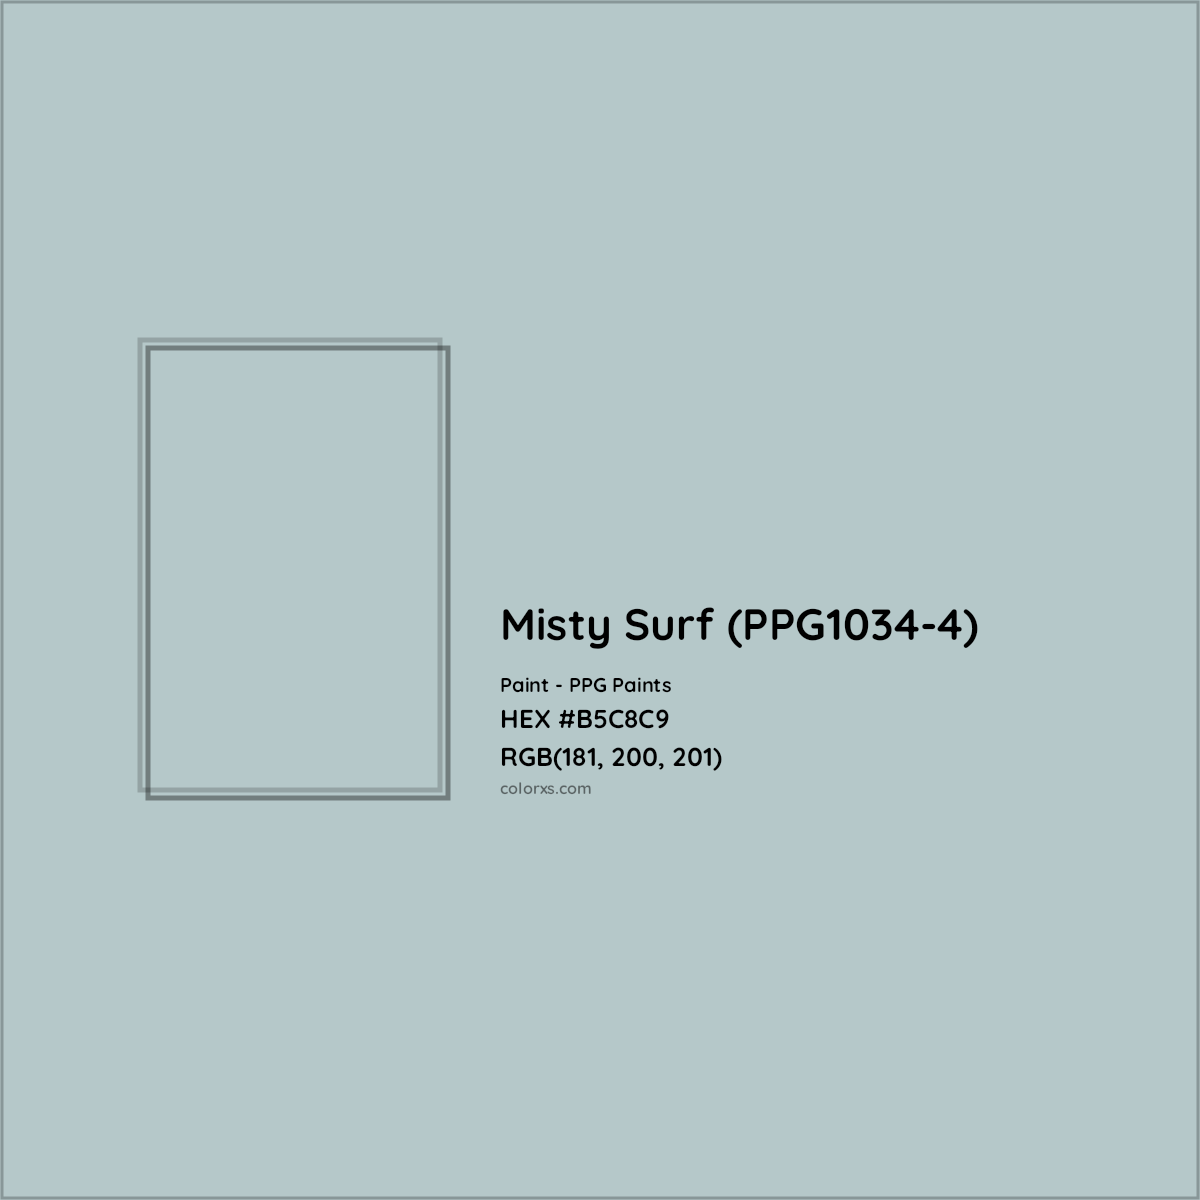 HEX #B5C8C9 Misty Surf (PPG1034-4) Paint PPG Paints - Color Code